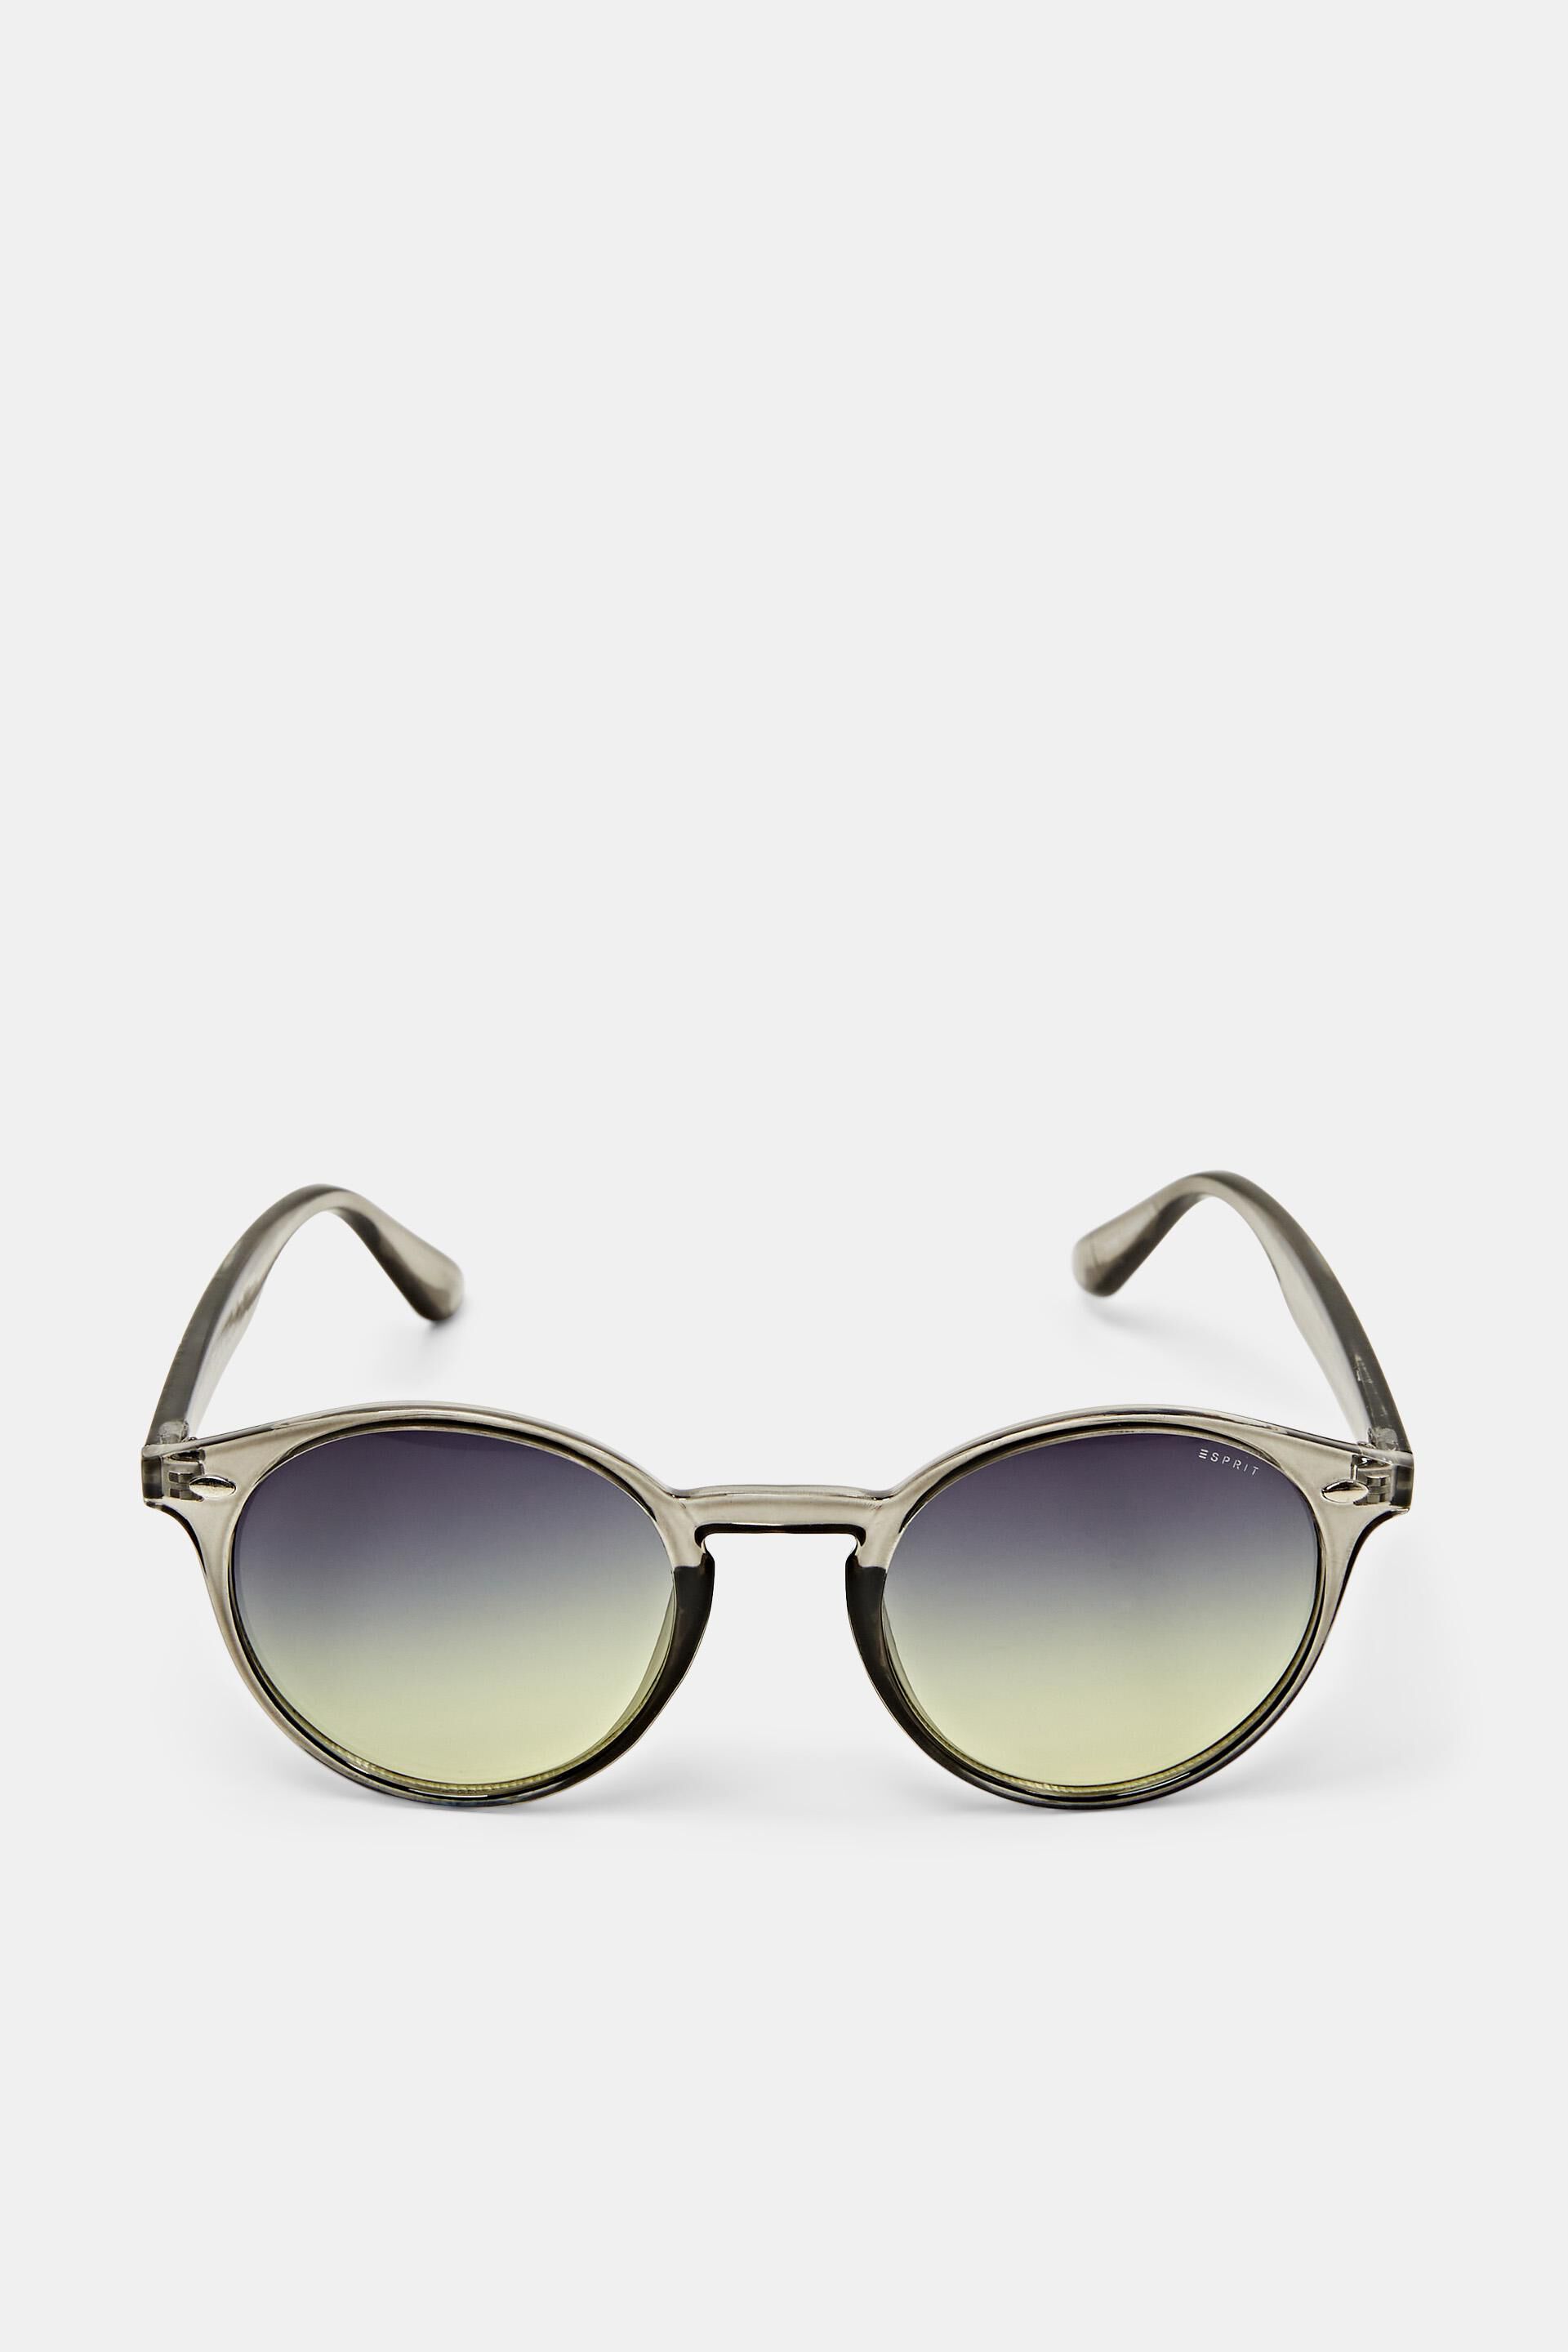 Esprit round lenses with Sunglasses